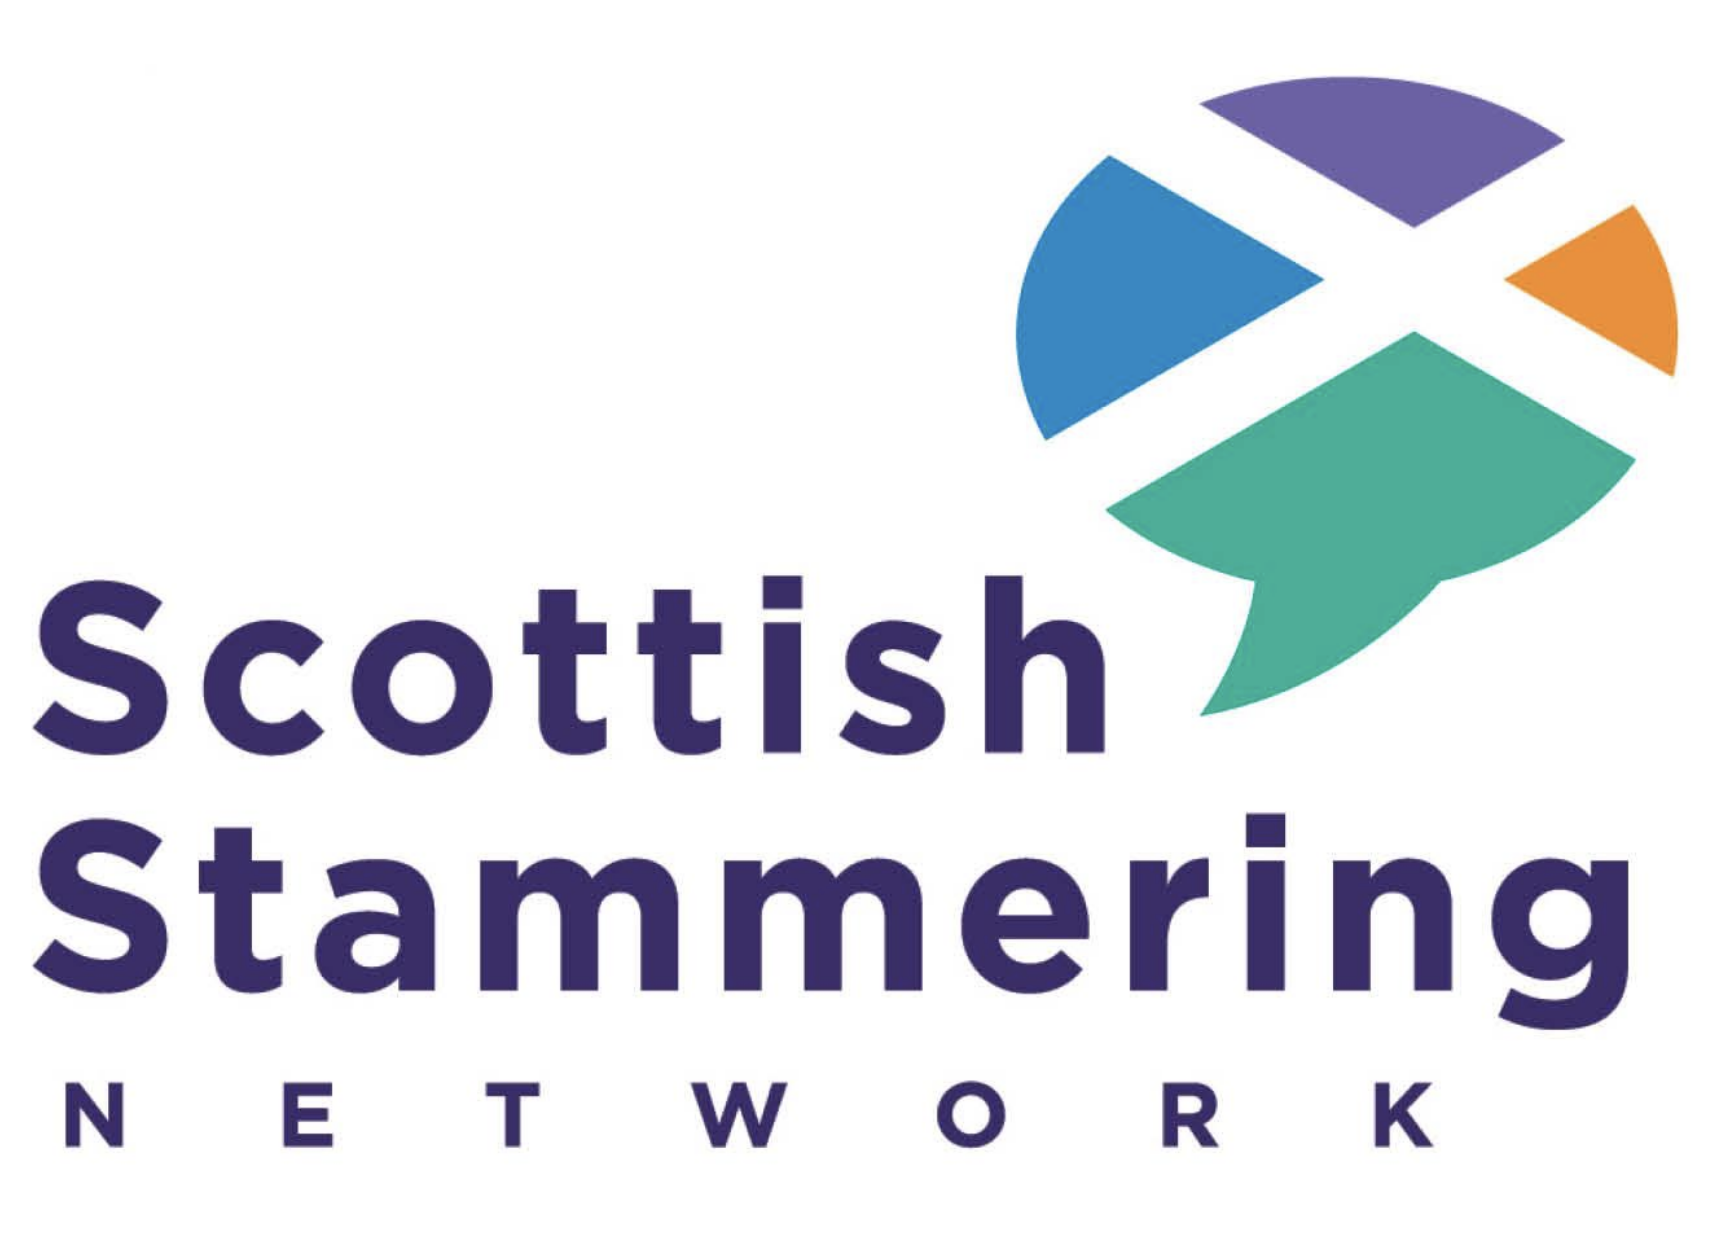 The Scottish Stammering Network logo